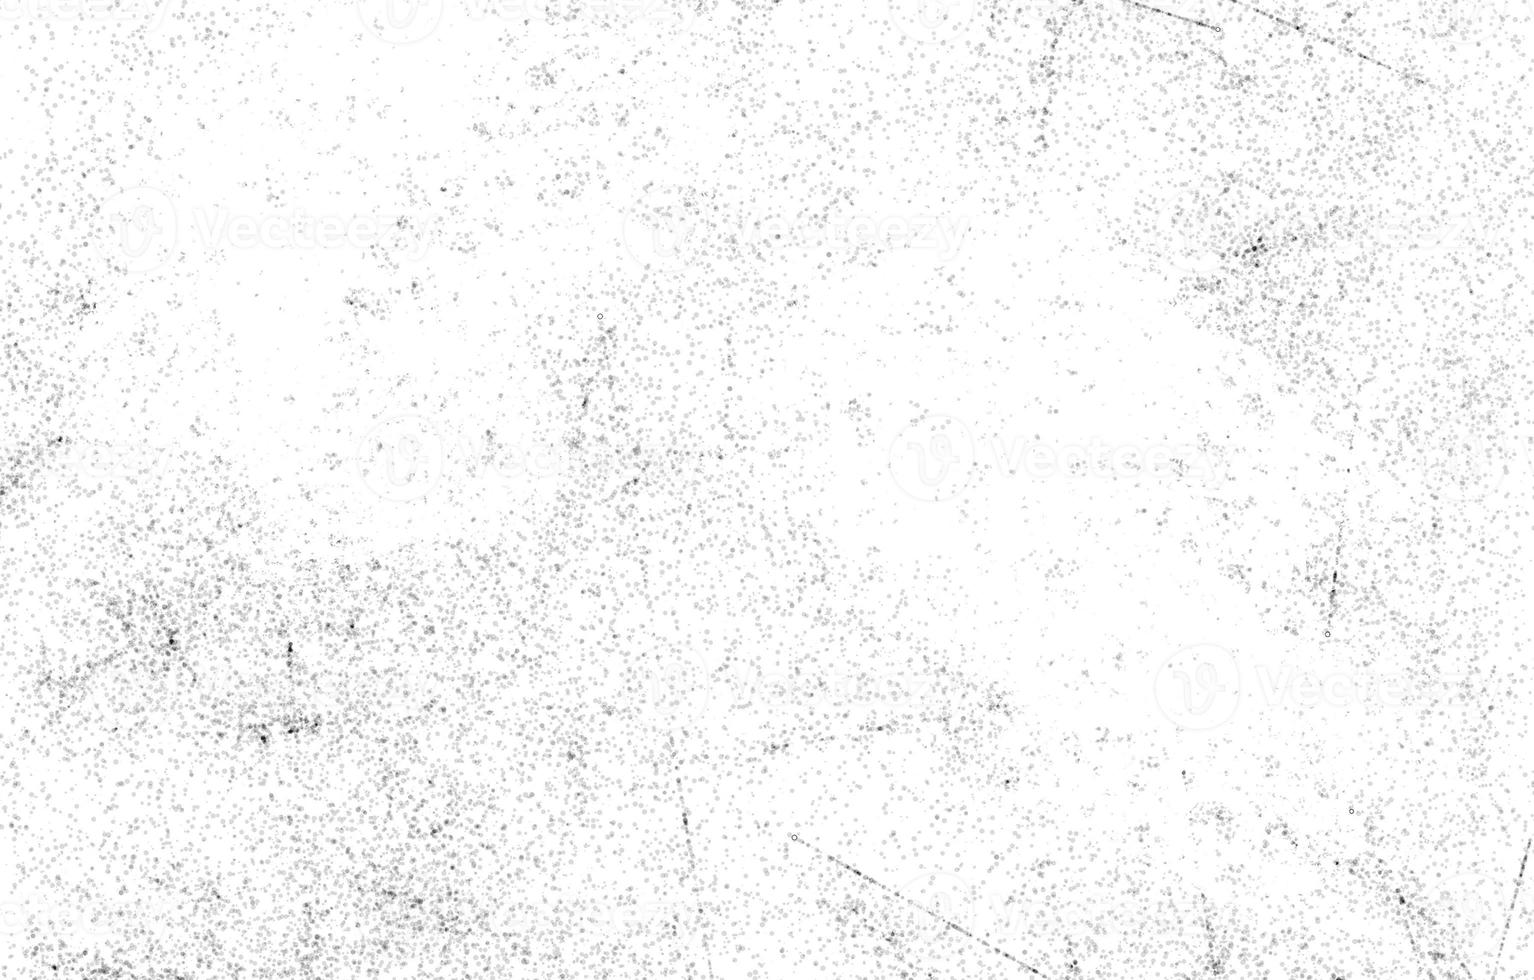 Grunge Texturen background.grainy abstrakte Textur auf einem weißen background.highly detaillierten Grunge-Hintergrund mit Raum. foto